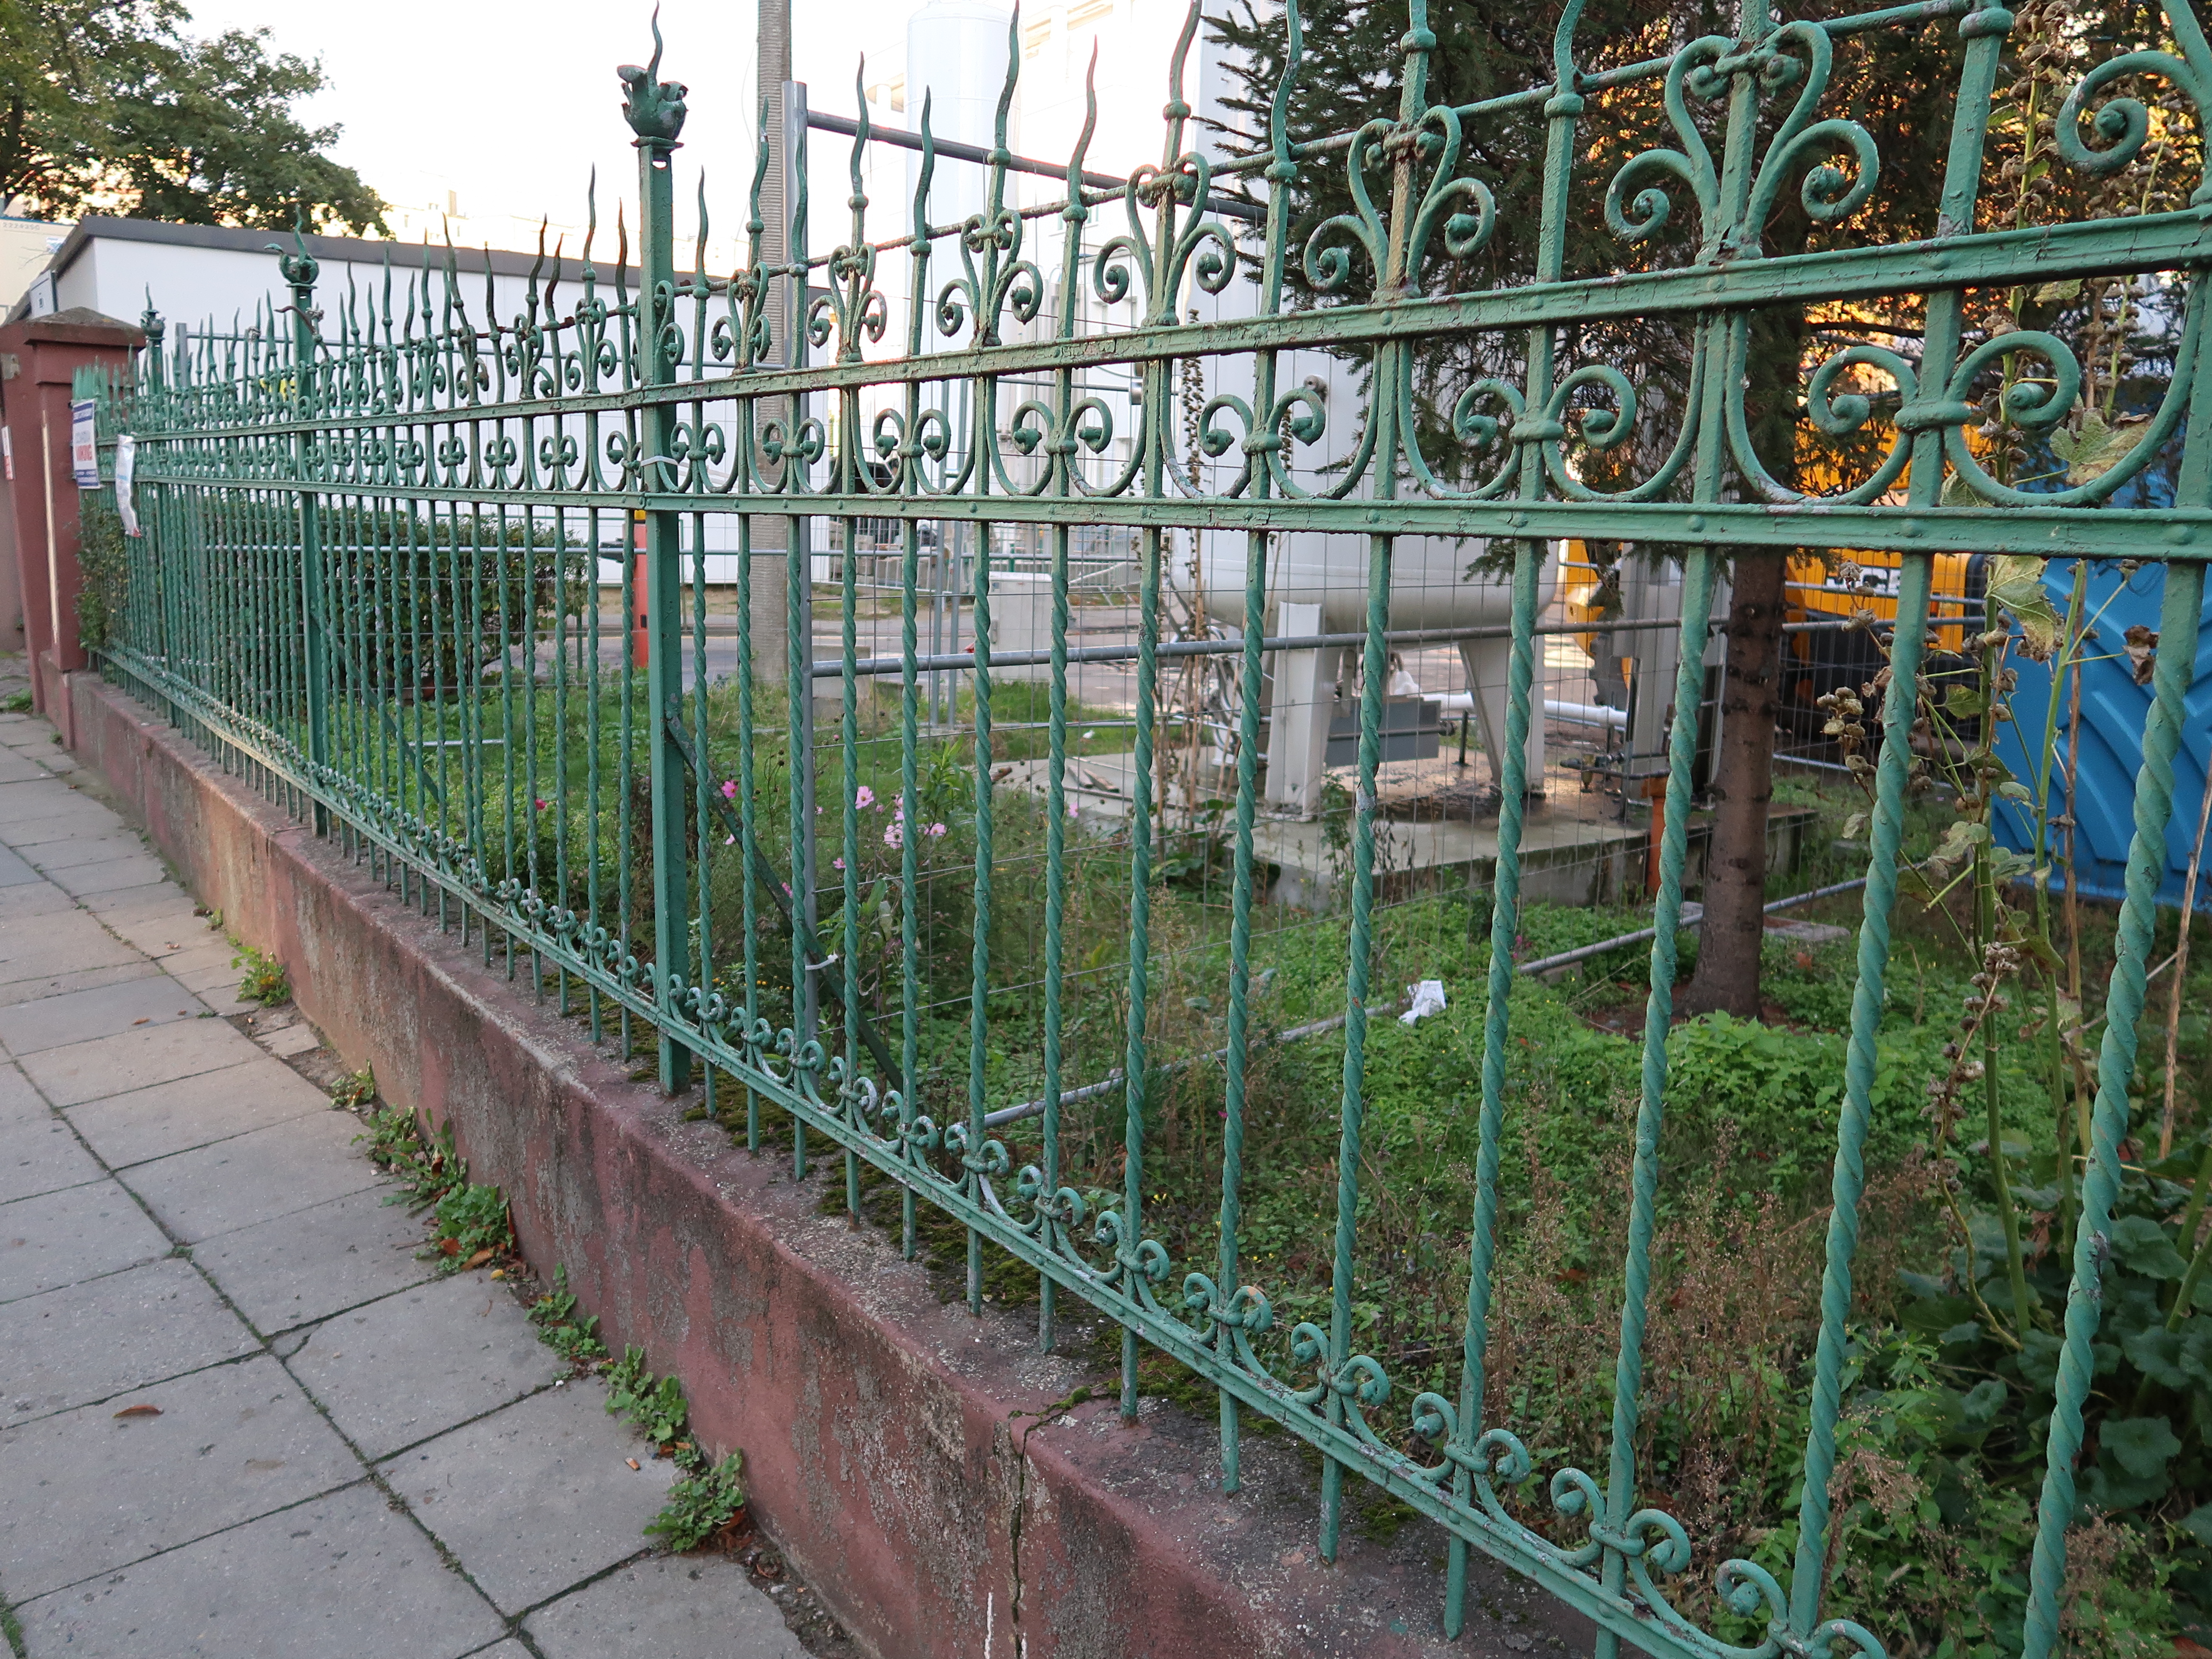 Kute ogrodzenie terenu klasztoru z lat 20. XX w. przy ul. Starowiejskiej (przęsła).